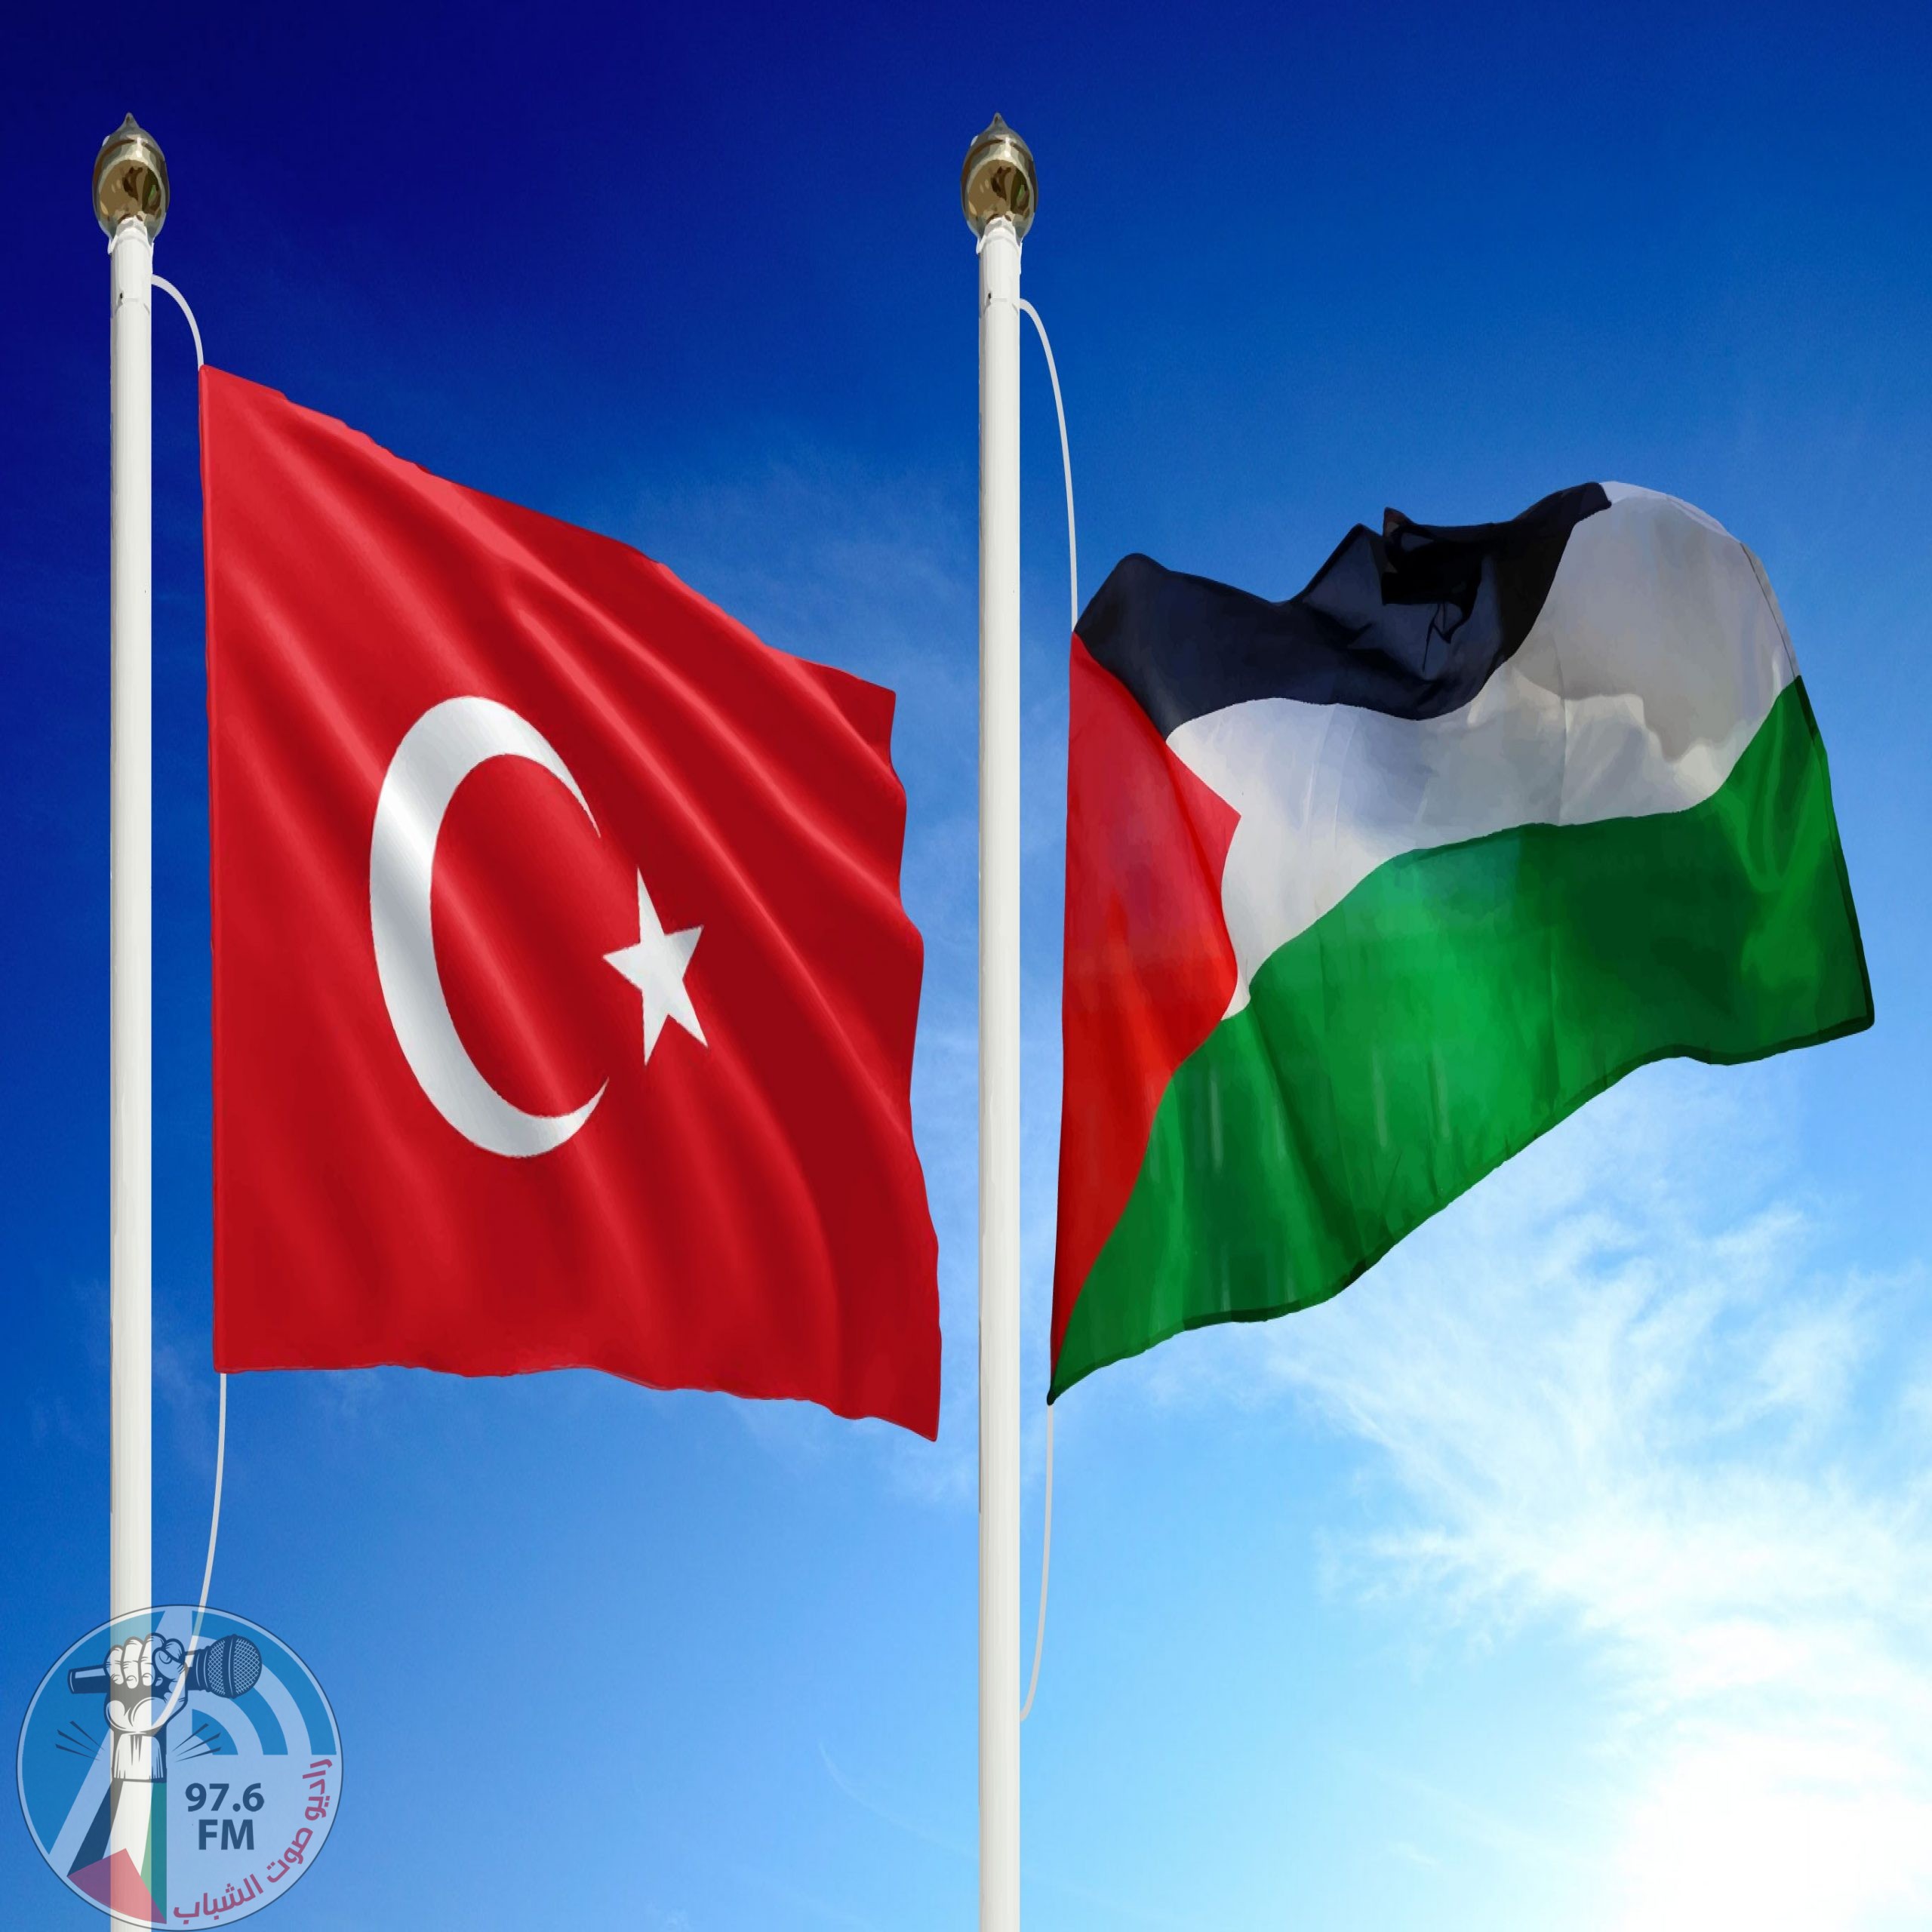 تركيا: السبب الأساس الذي دفع الفصائل الفلسطينية لتأجيل الانتخابات هو رفض إسرائيل إجرائها في القدس وعرقلة الحملة الانتخابية